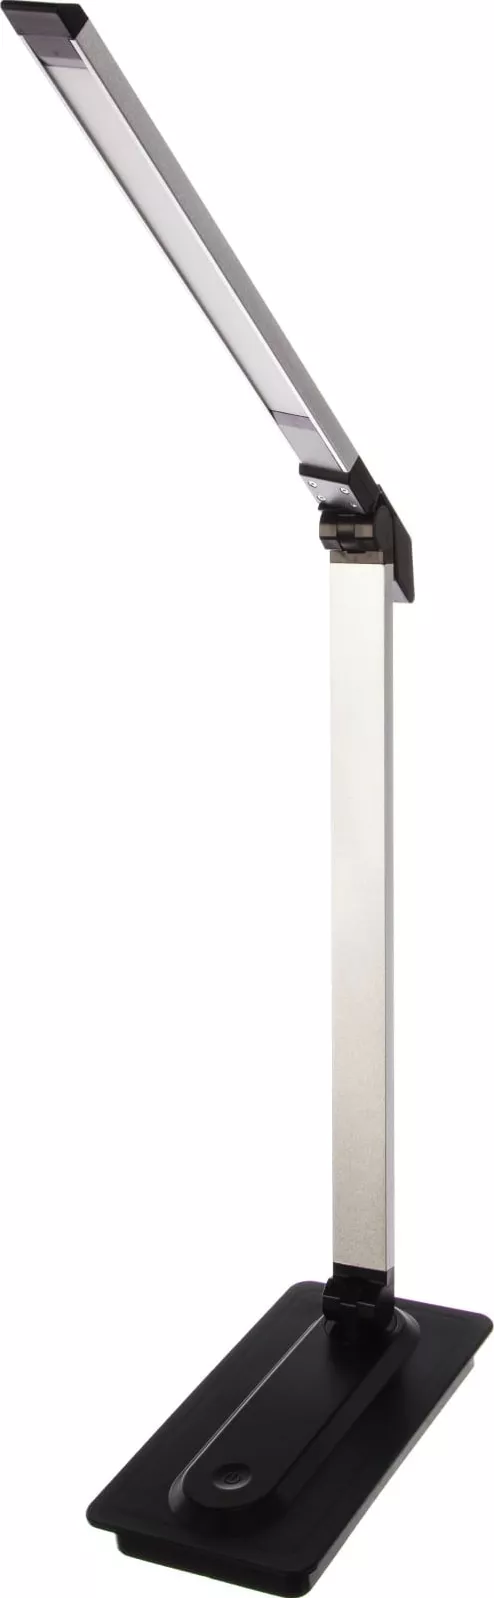 Светильник настольный Camelion KD-846  C02 черный LED (Свет-ник наст, 8Вт,сенс.регулир. яркости, 3 ц